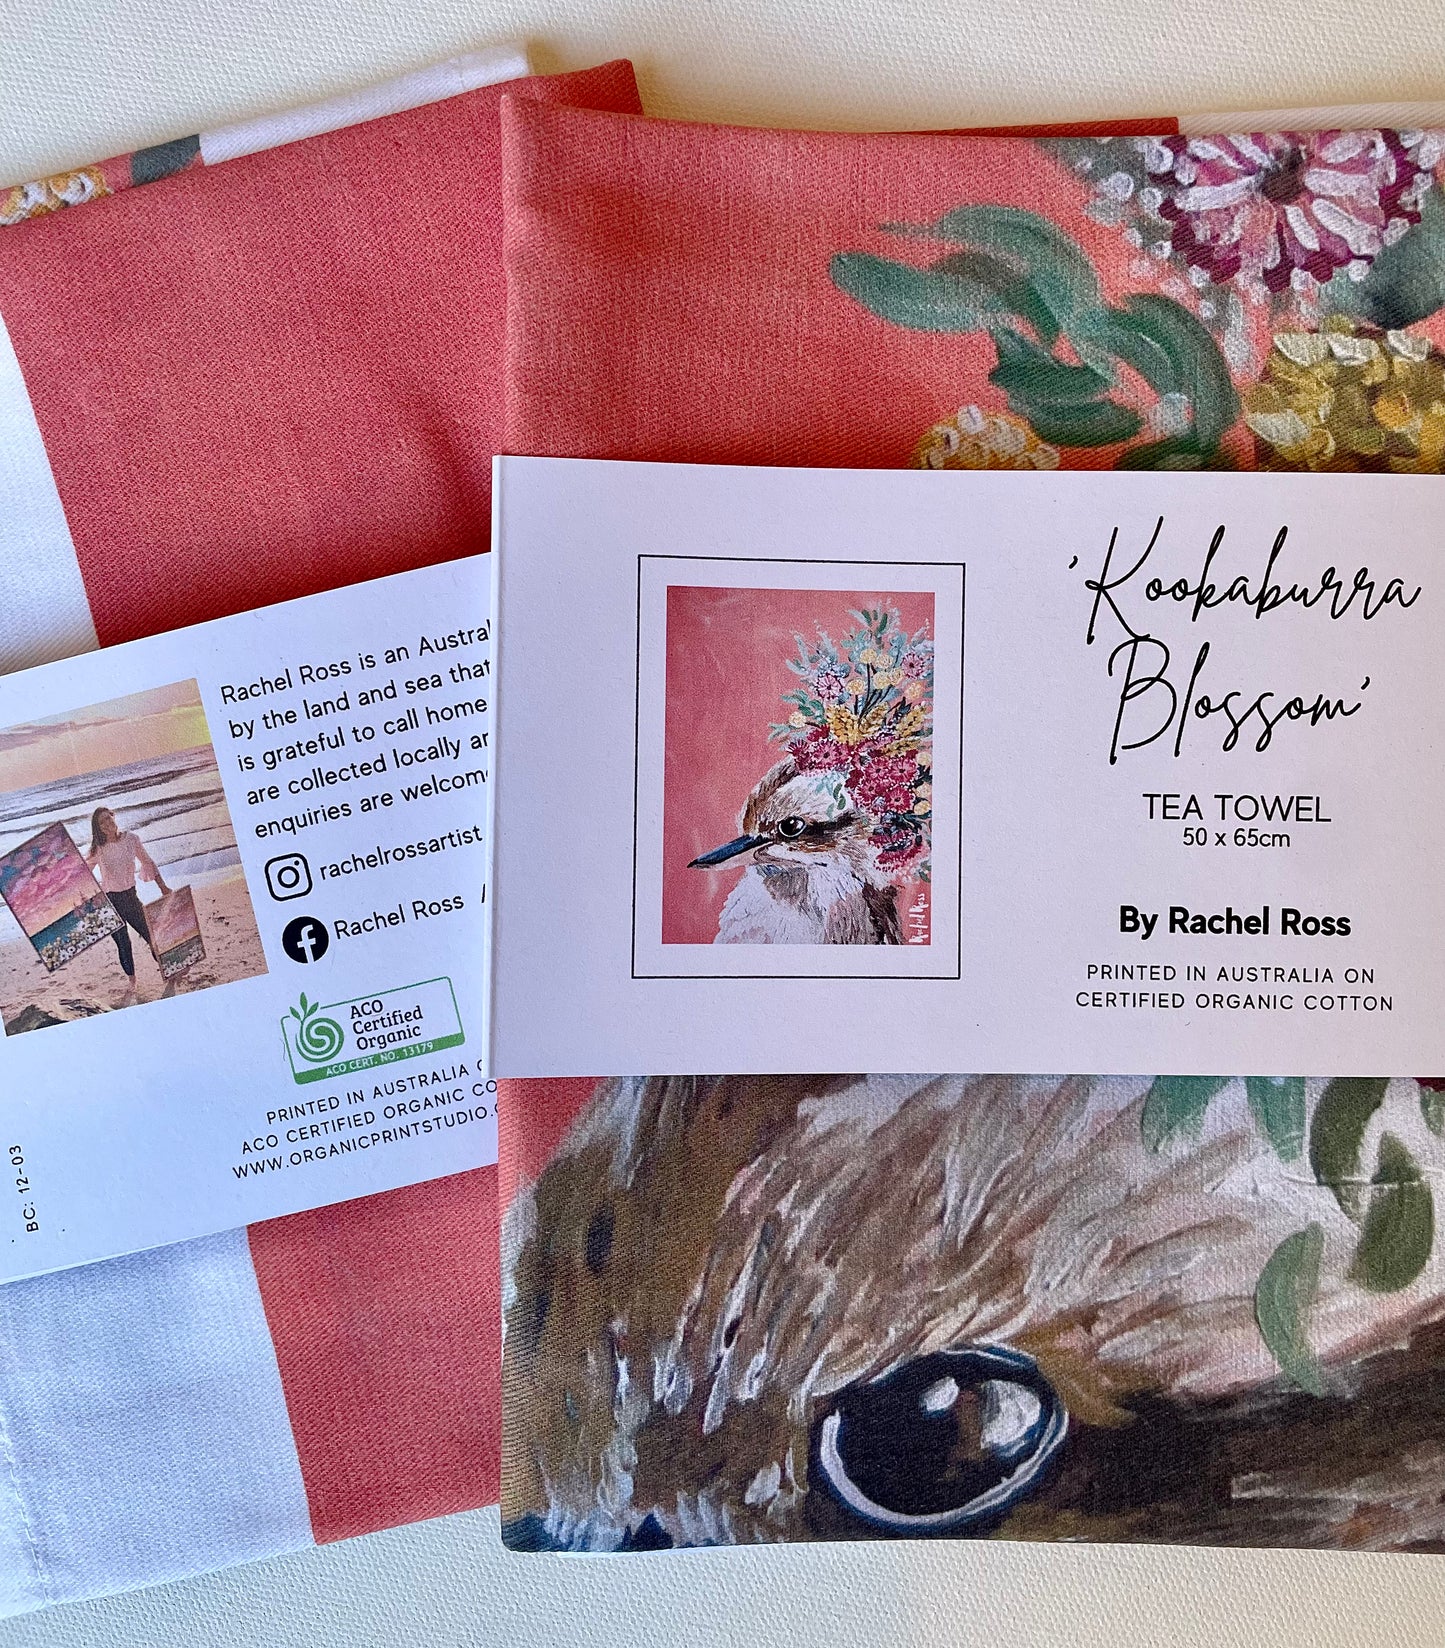 Kookaburra Blossom Tea Towel